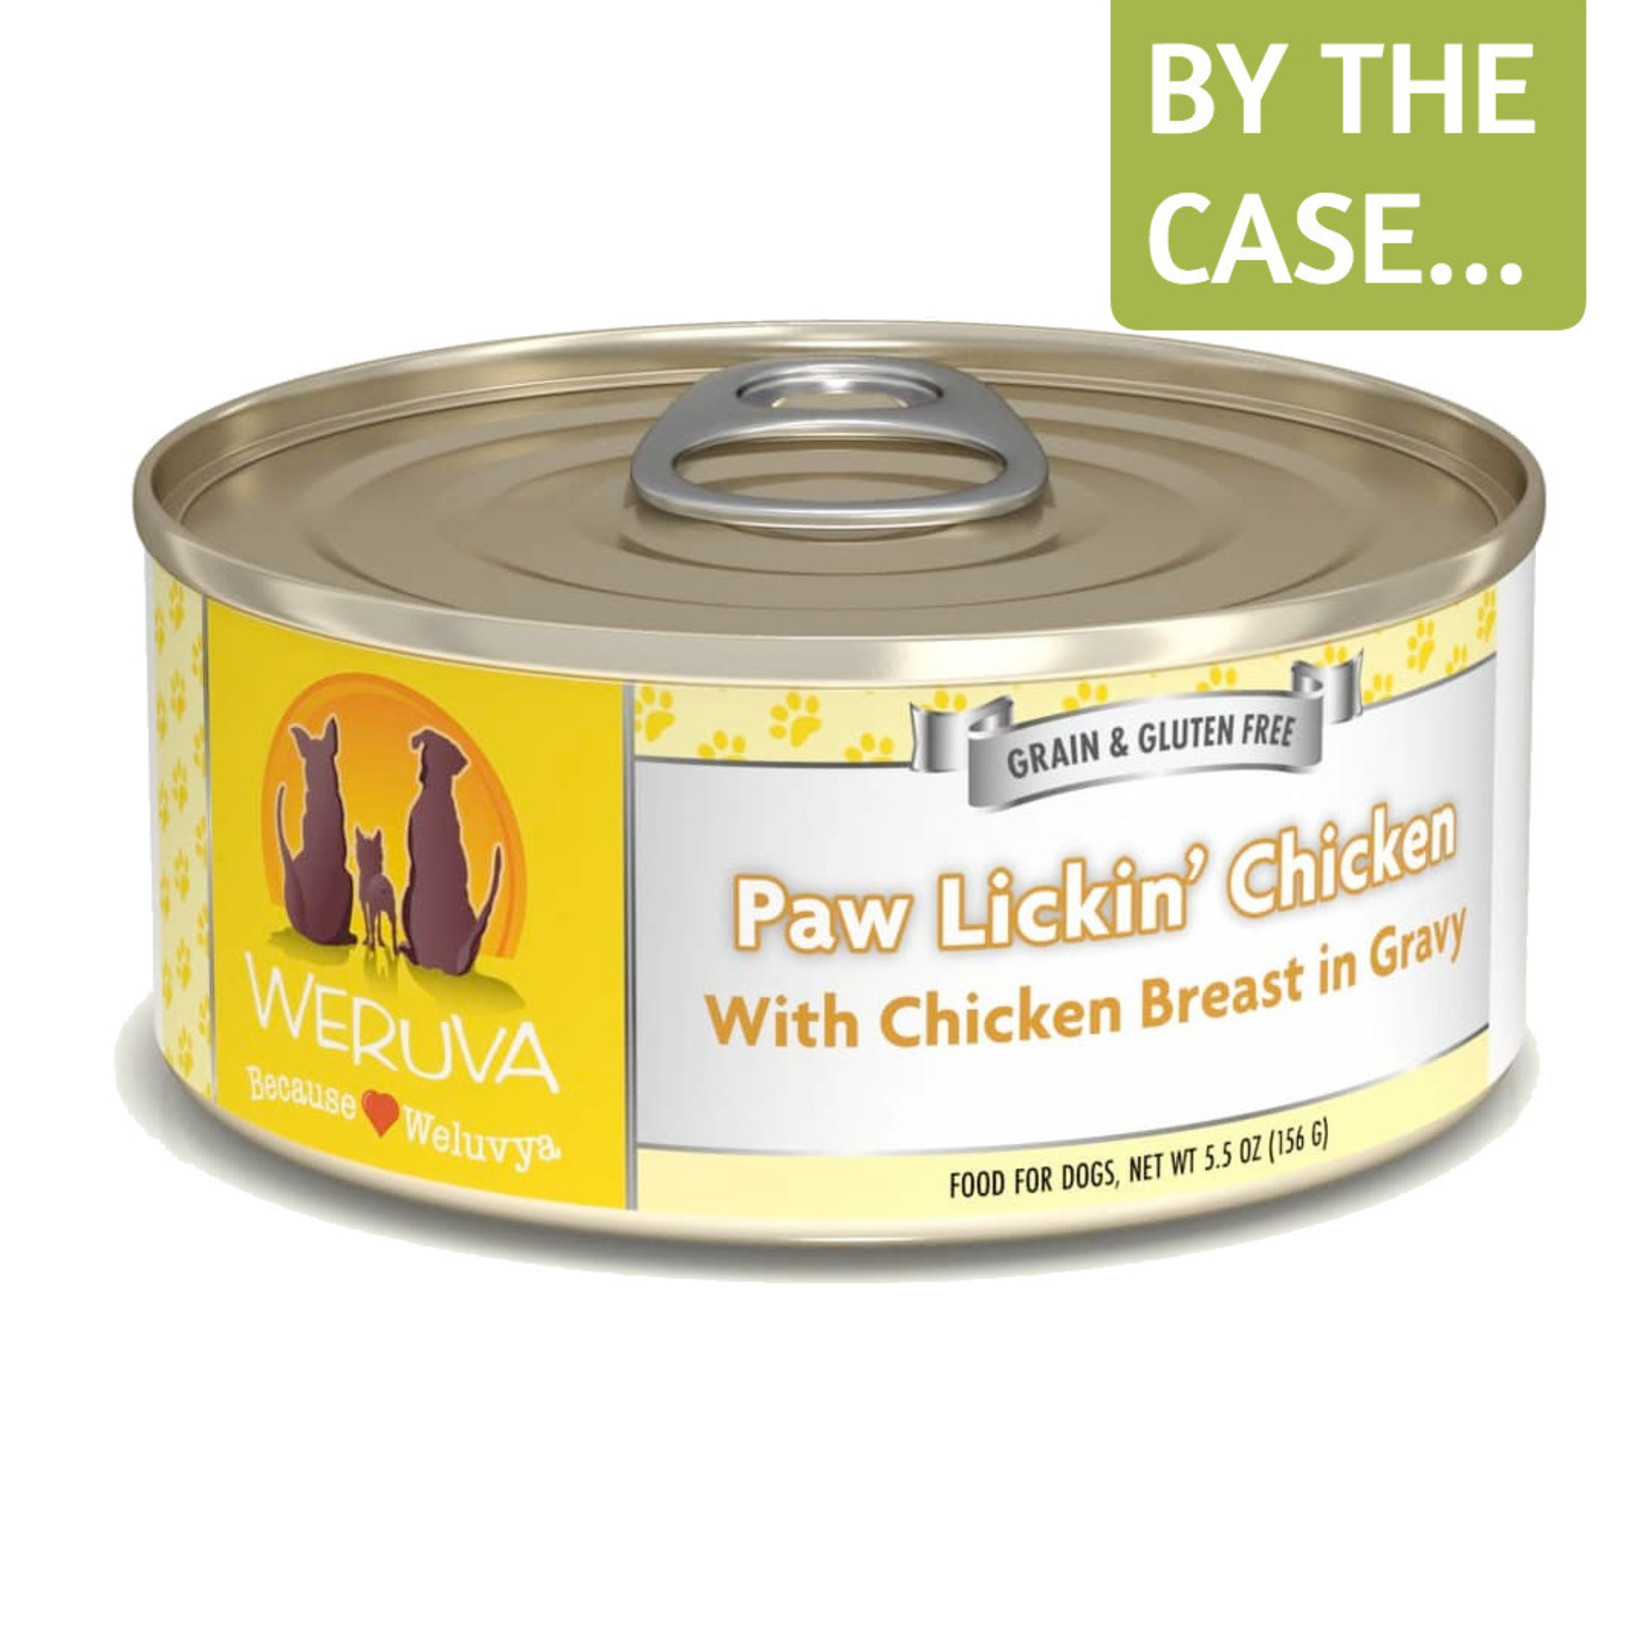 Weruva Weruva Classic Wet Dog Food Paw Lickin' Chicken with Chicken Breast in Gravy 5.5oz Can Grain Free